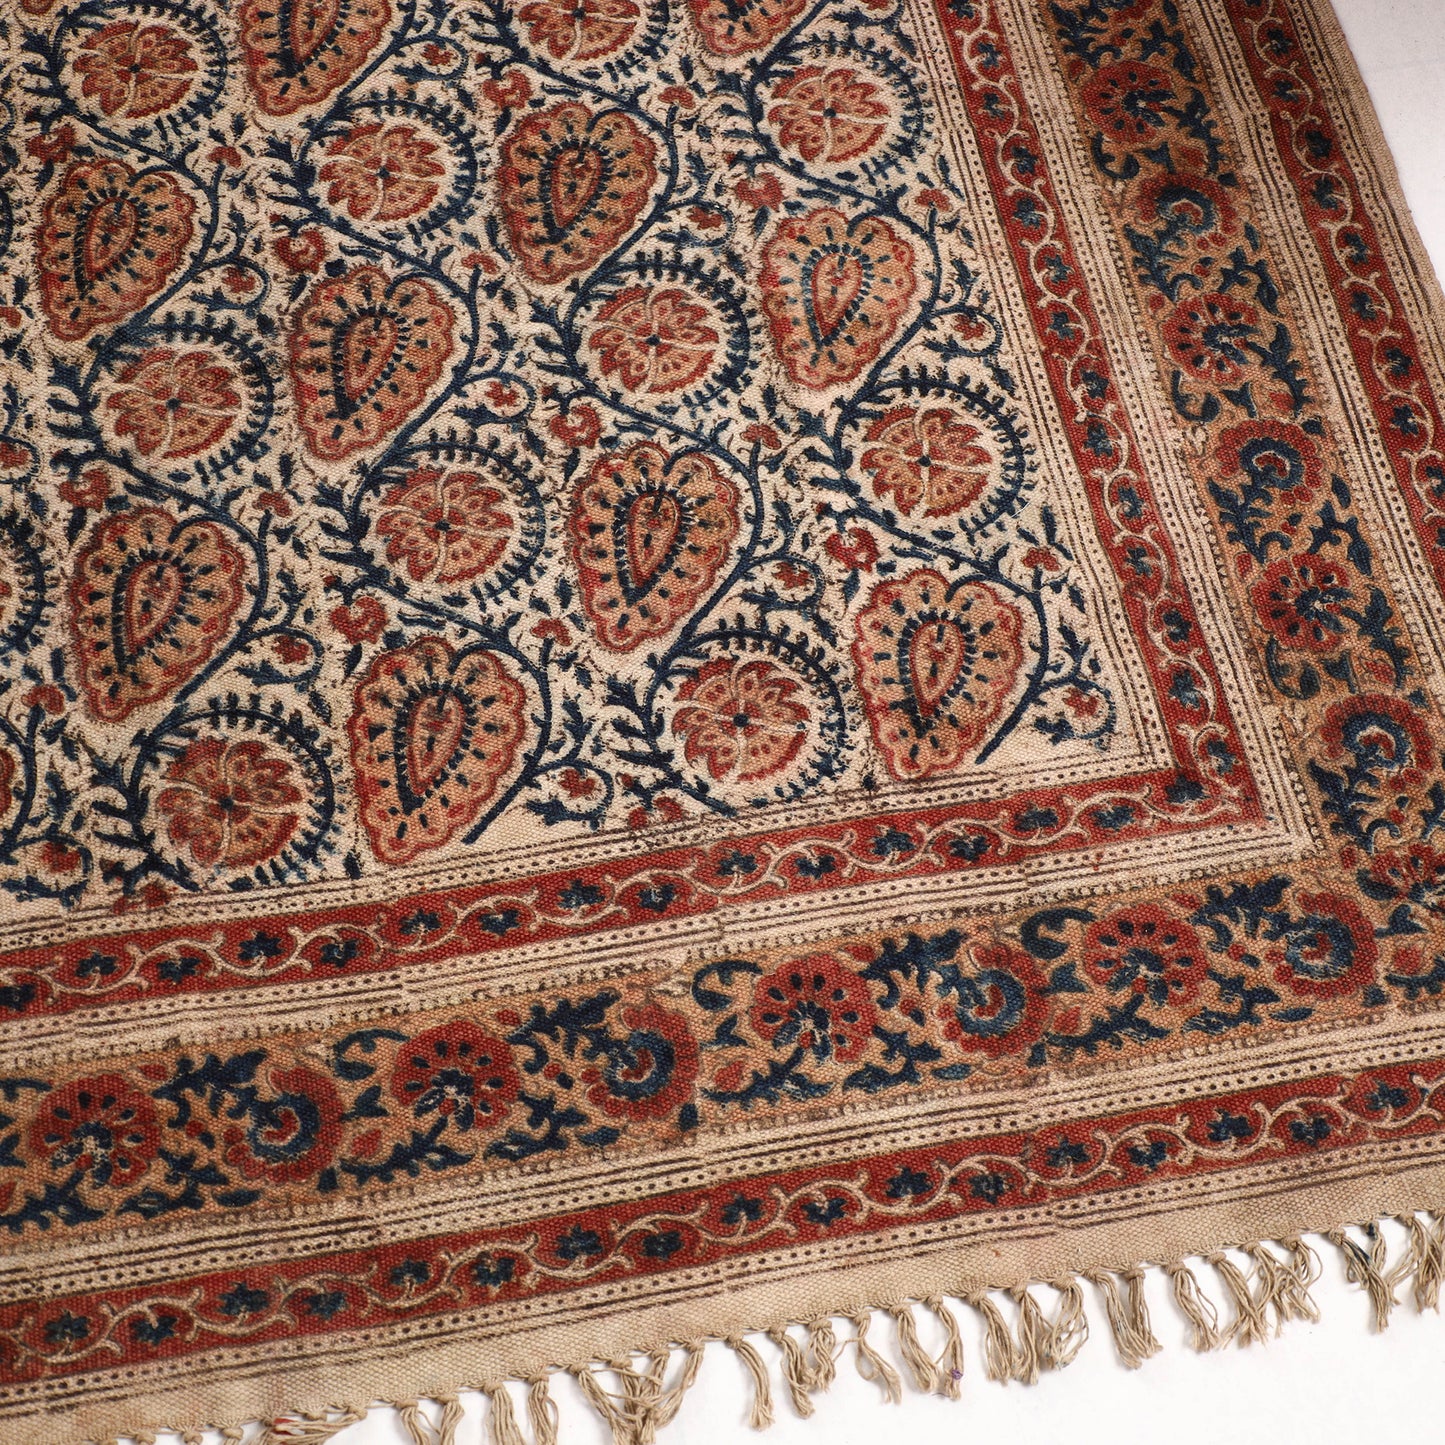 Warangal Weave Kalamkari Block Printed Cotton Durrie / Carpet / Rug (97 x 60 in)